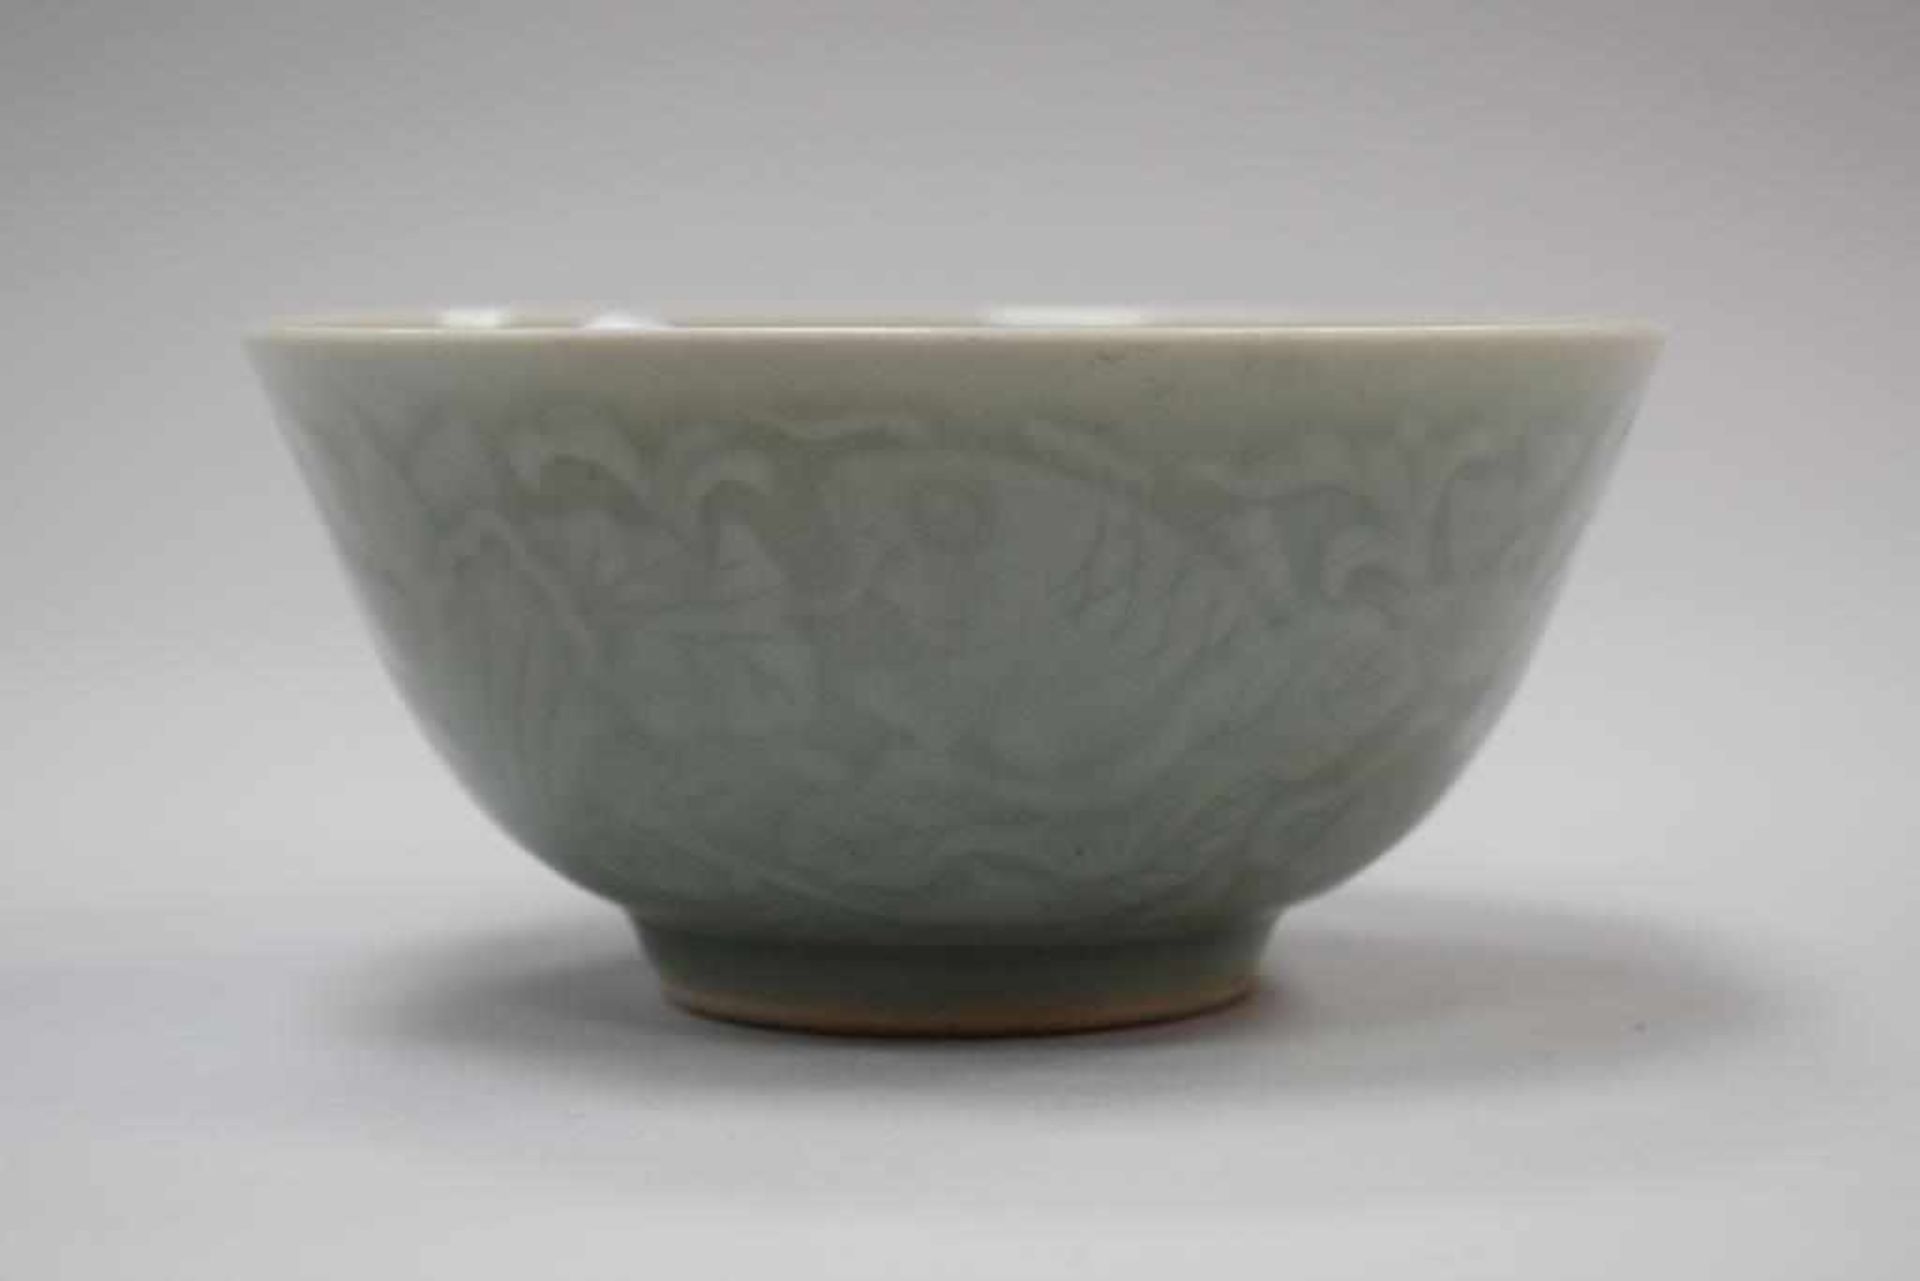 Chinesische Keramikschale mit SeladonglasurSchale Keramik China, jadegrüne Seladonglasur mit Fischen